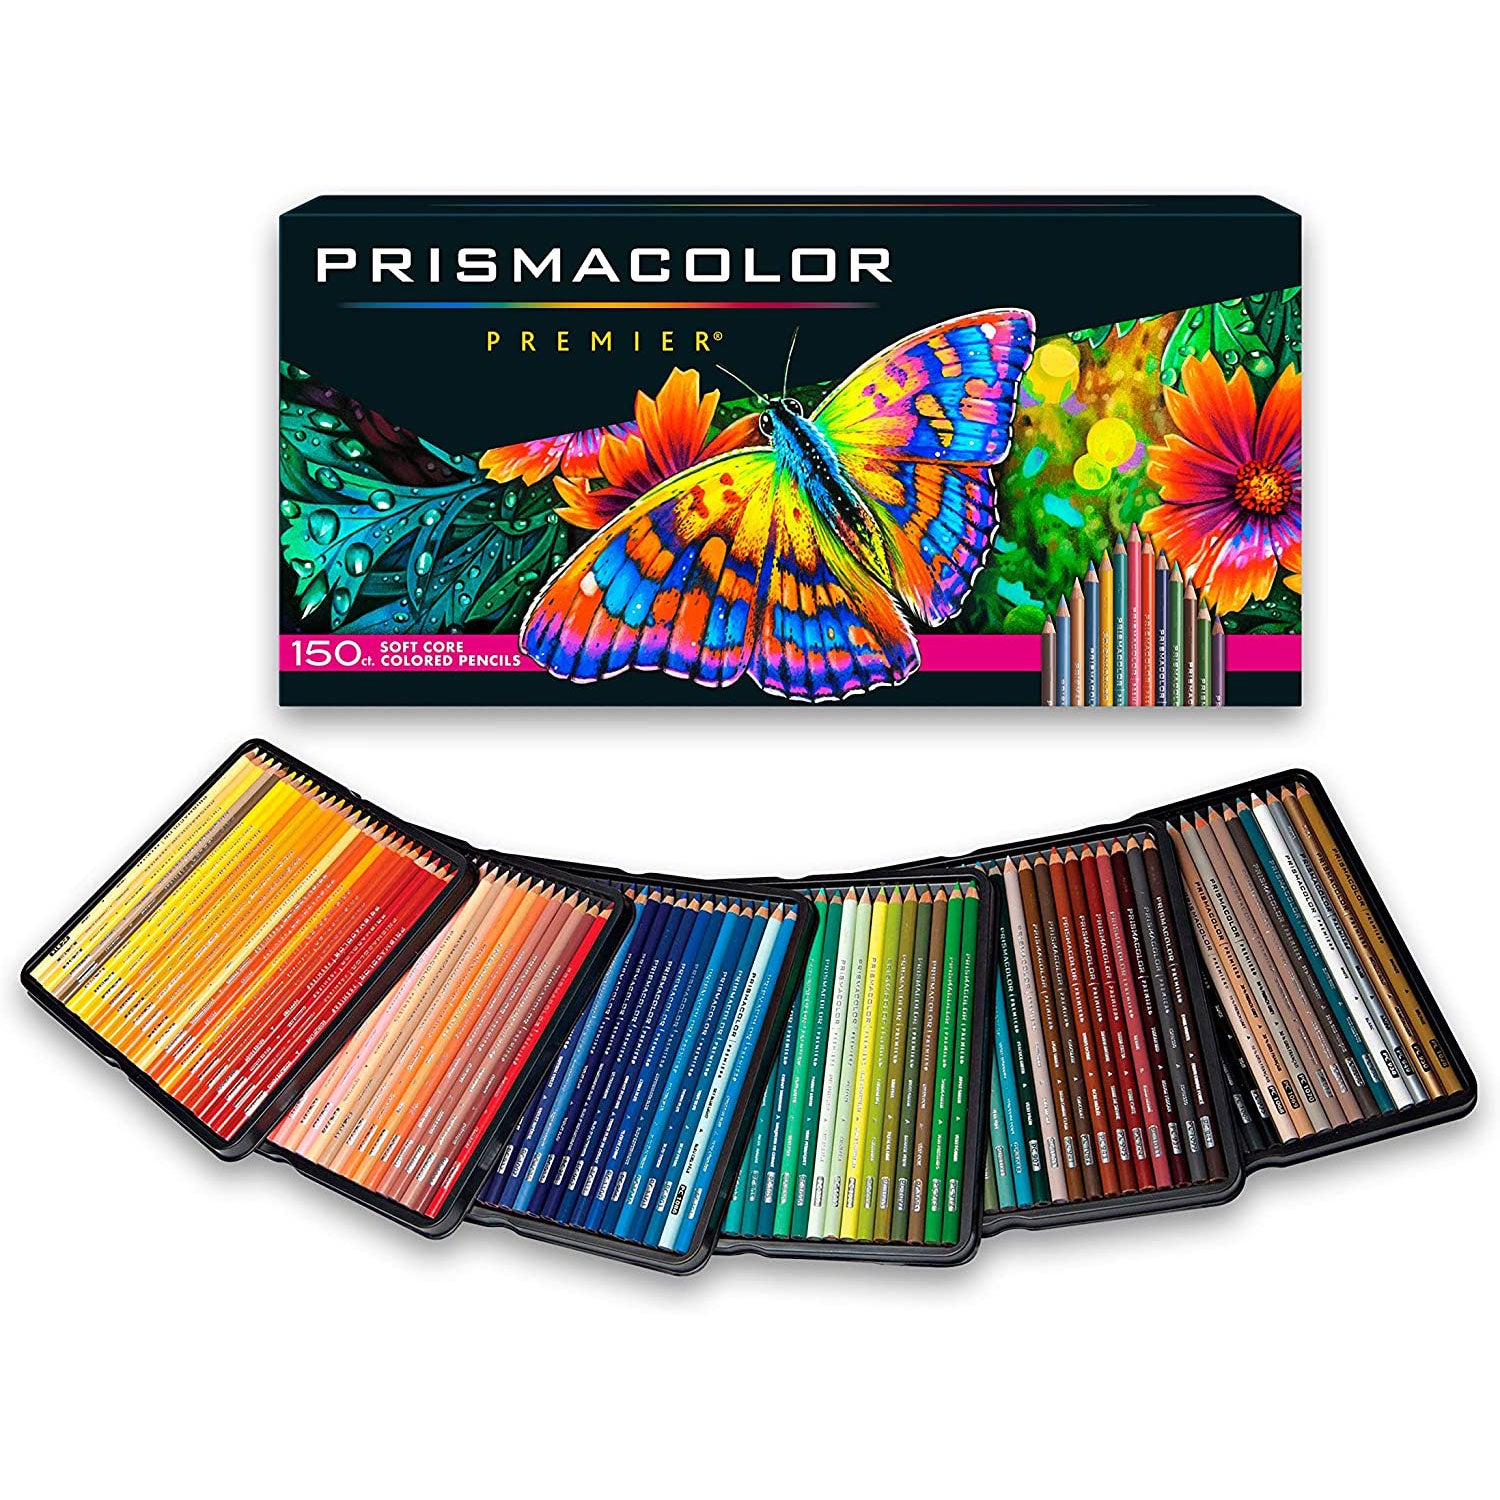 Prismacolor Premier Colored Pencils 12 set, Soft Core